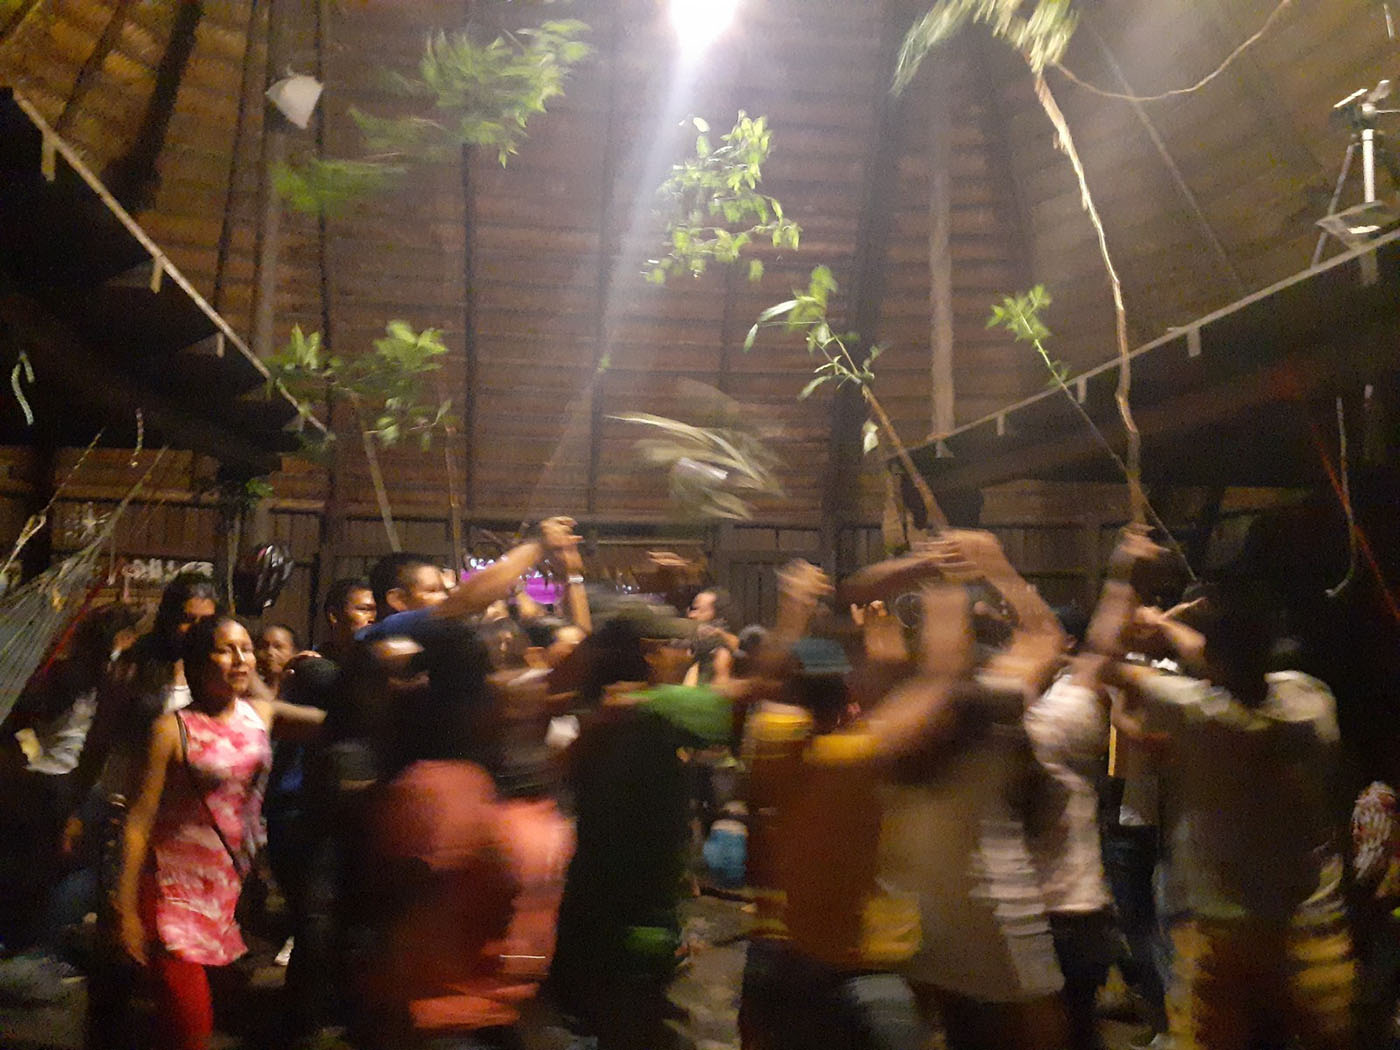 Celebraciones muinanes con bailes forman parte de tradición cultural. Fotos: Camila Sofía Venegas Osorio antropóloga UNAL con Maestría en Estudios Amazónicos